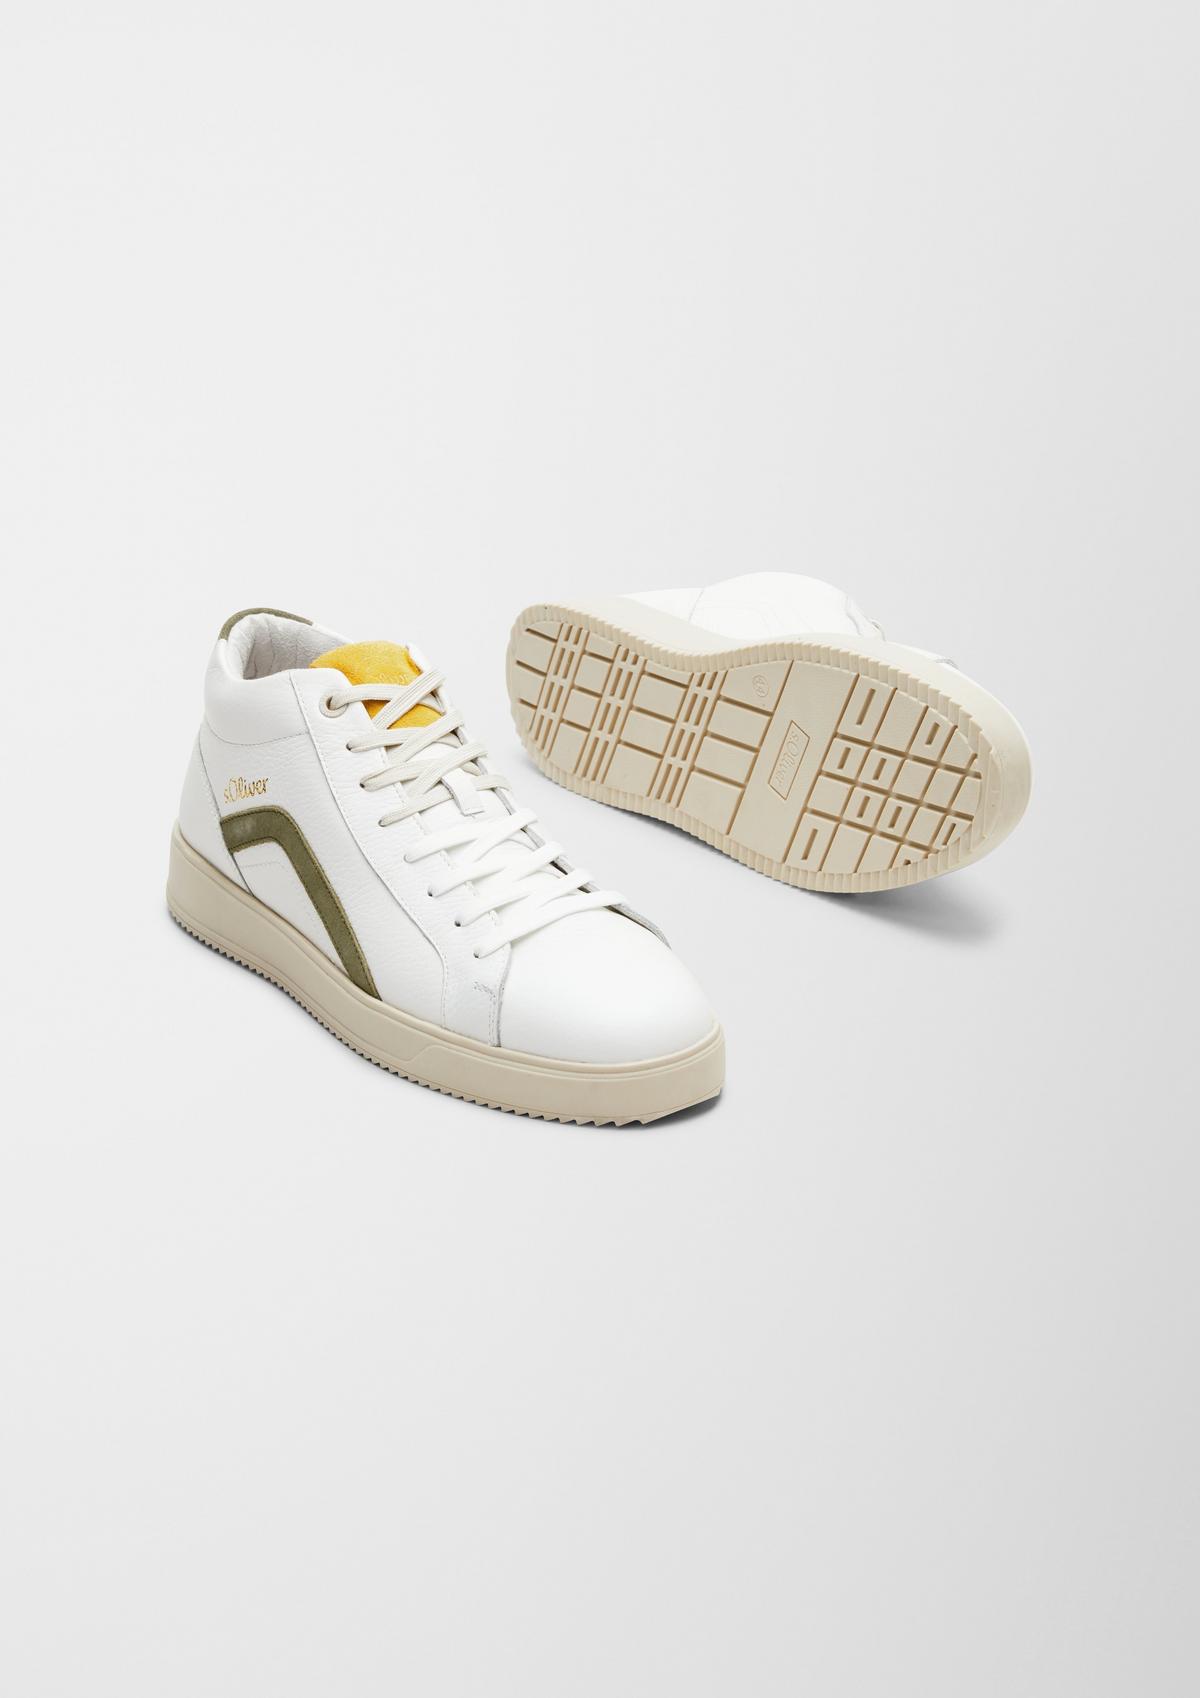 s.Oliver Sneakers en cuir animées de détails contrastants